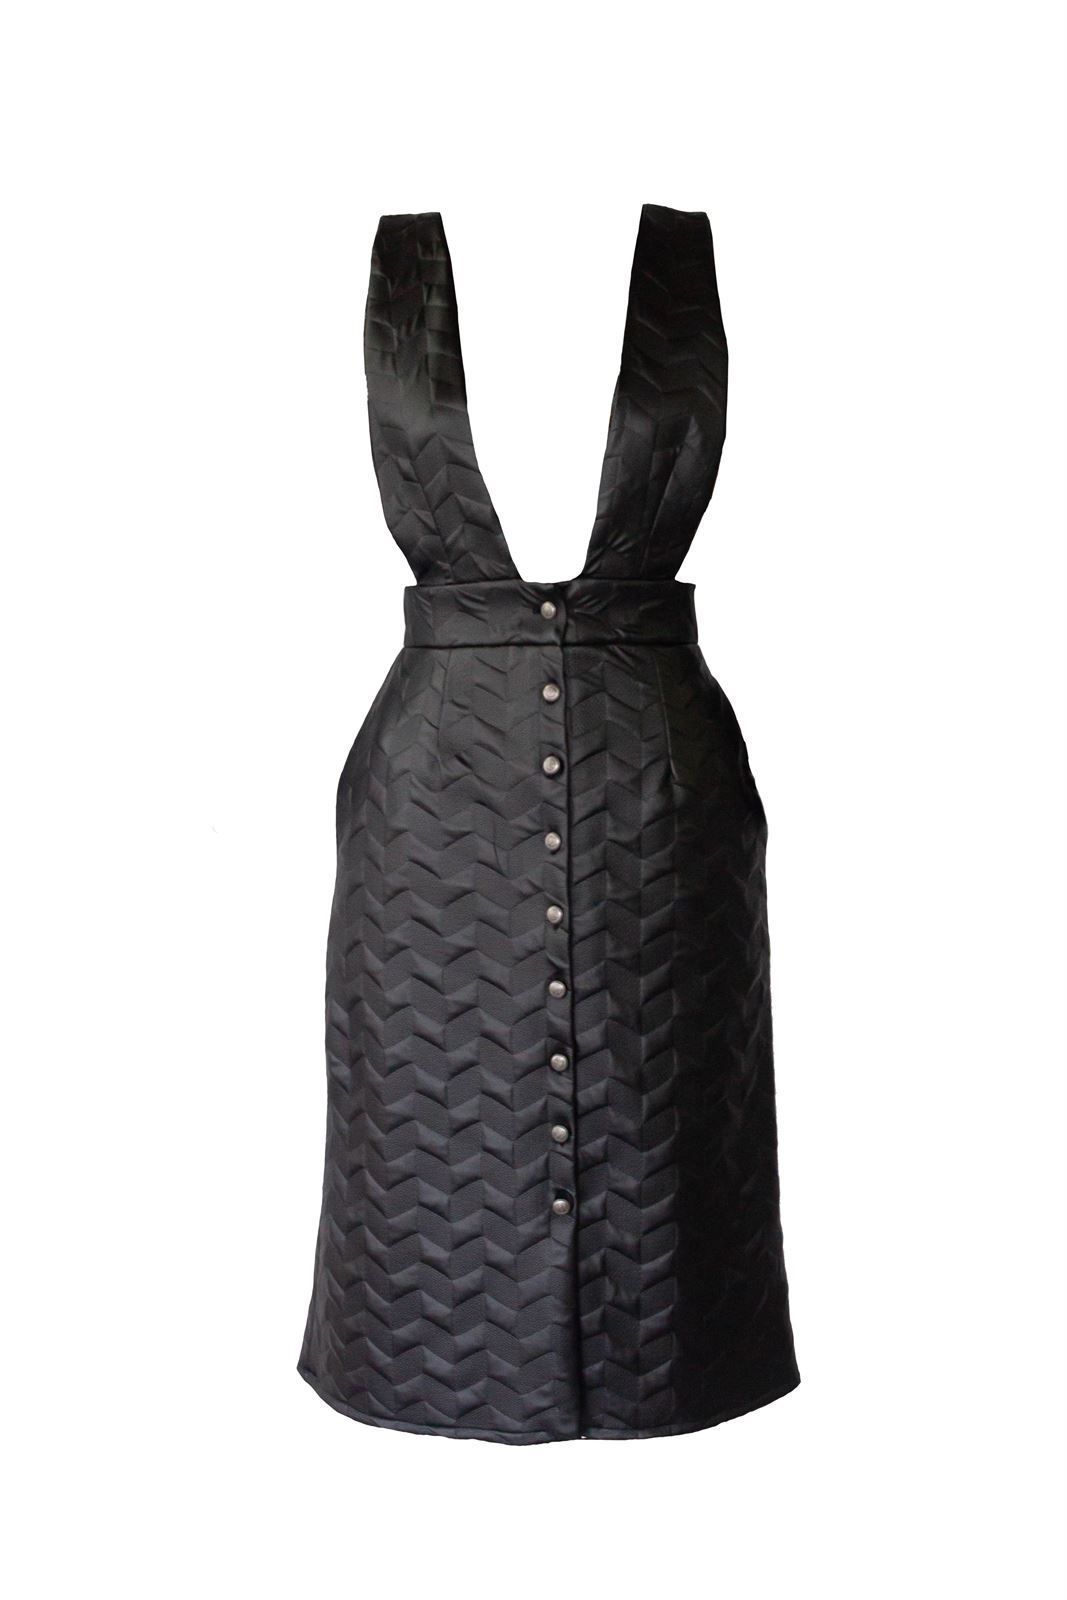 Vestido pichi polipiel reciclada negra con textura, abotonado en delantero - Imagen 4